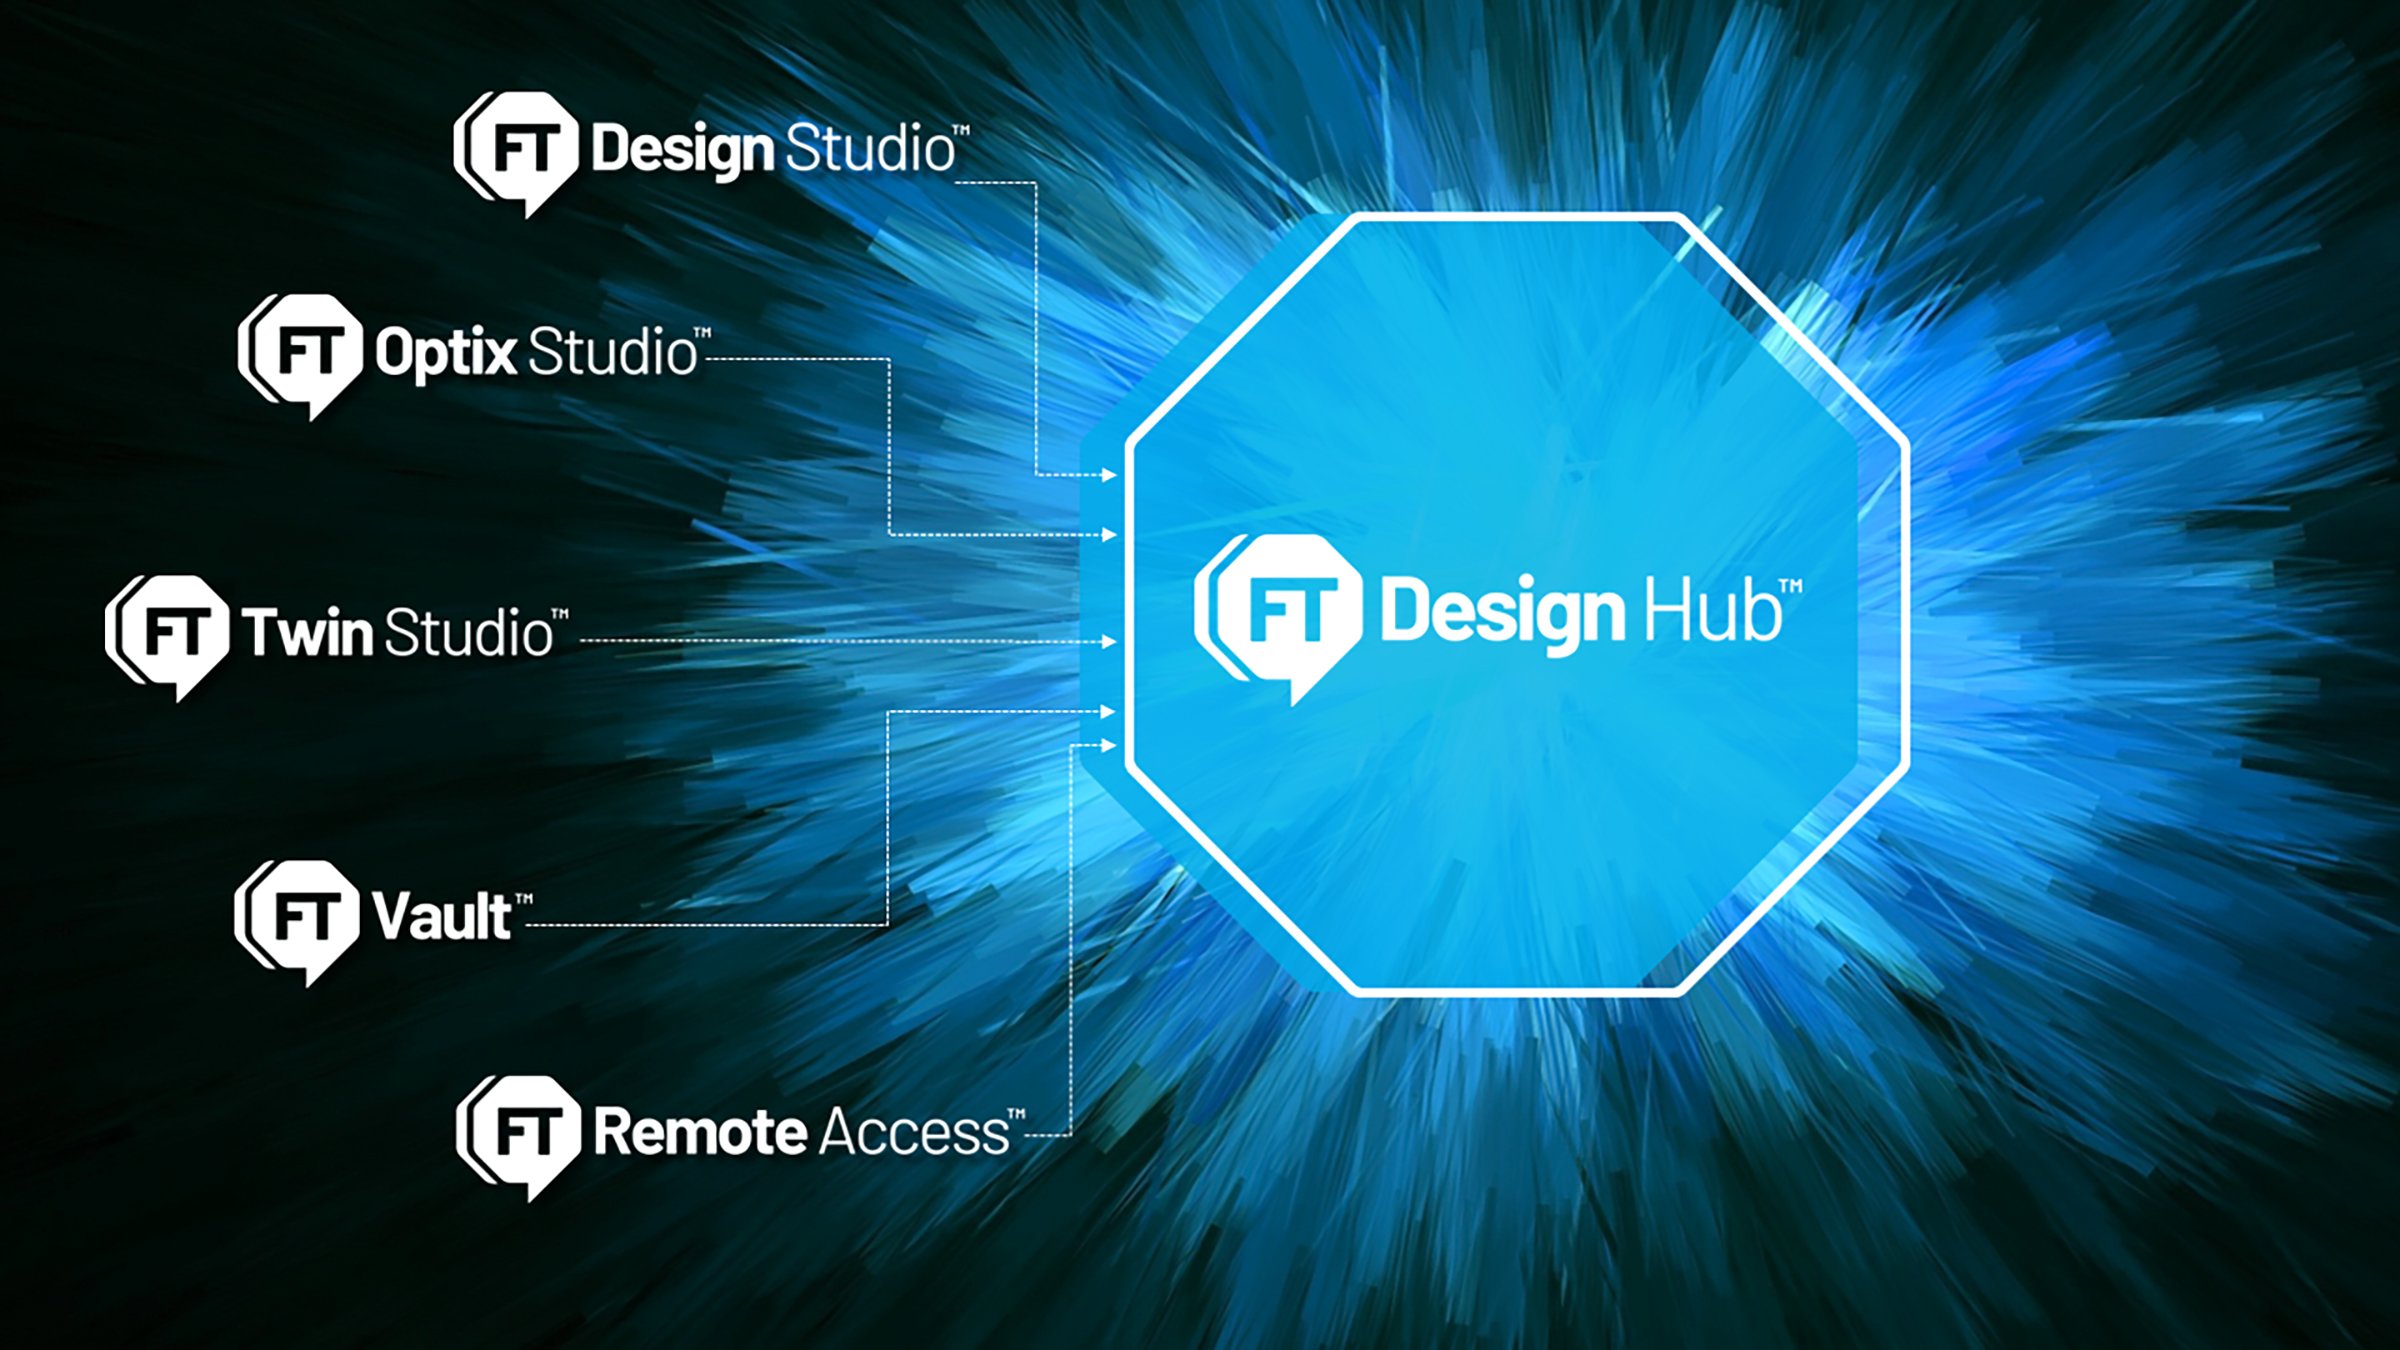 Ein Diagramm, das die Logos von fünf Cloud-Softwareprodukten auf einem blauen, zerklüfteten Hintergrund enthält, jeweils mit Pfeilen, die auf ein großes FactoryTalk Design Hub-Logo zeigen.